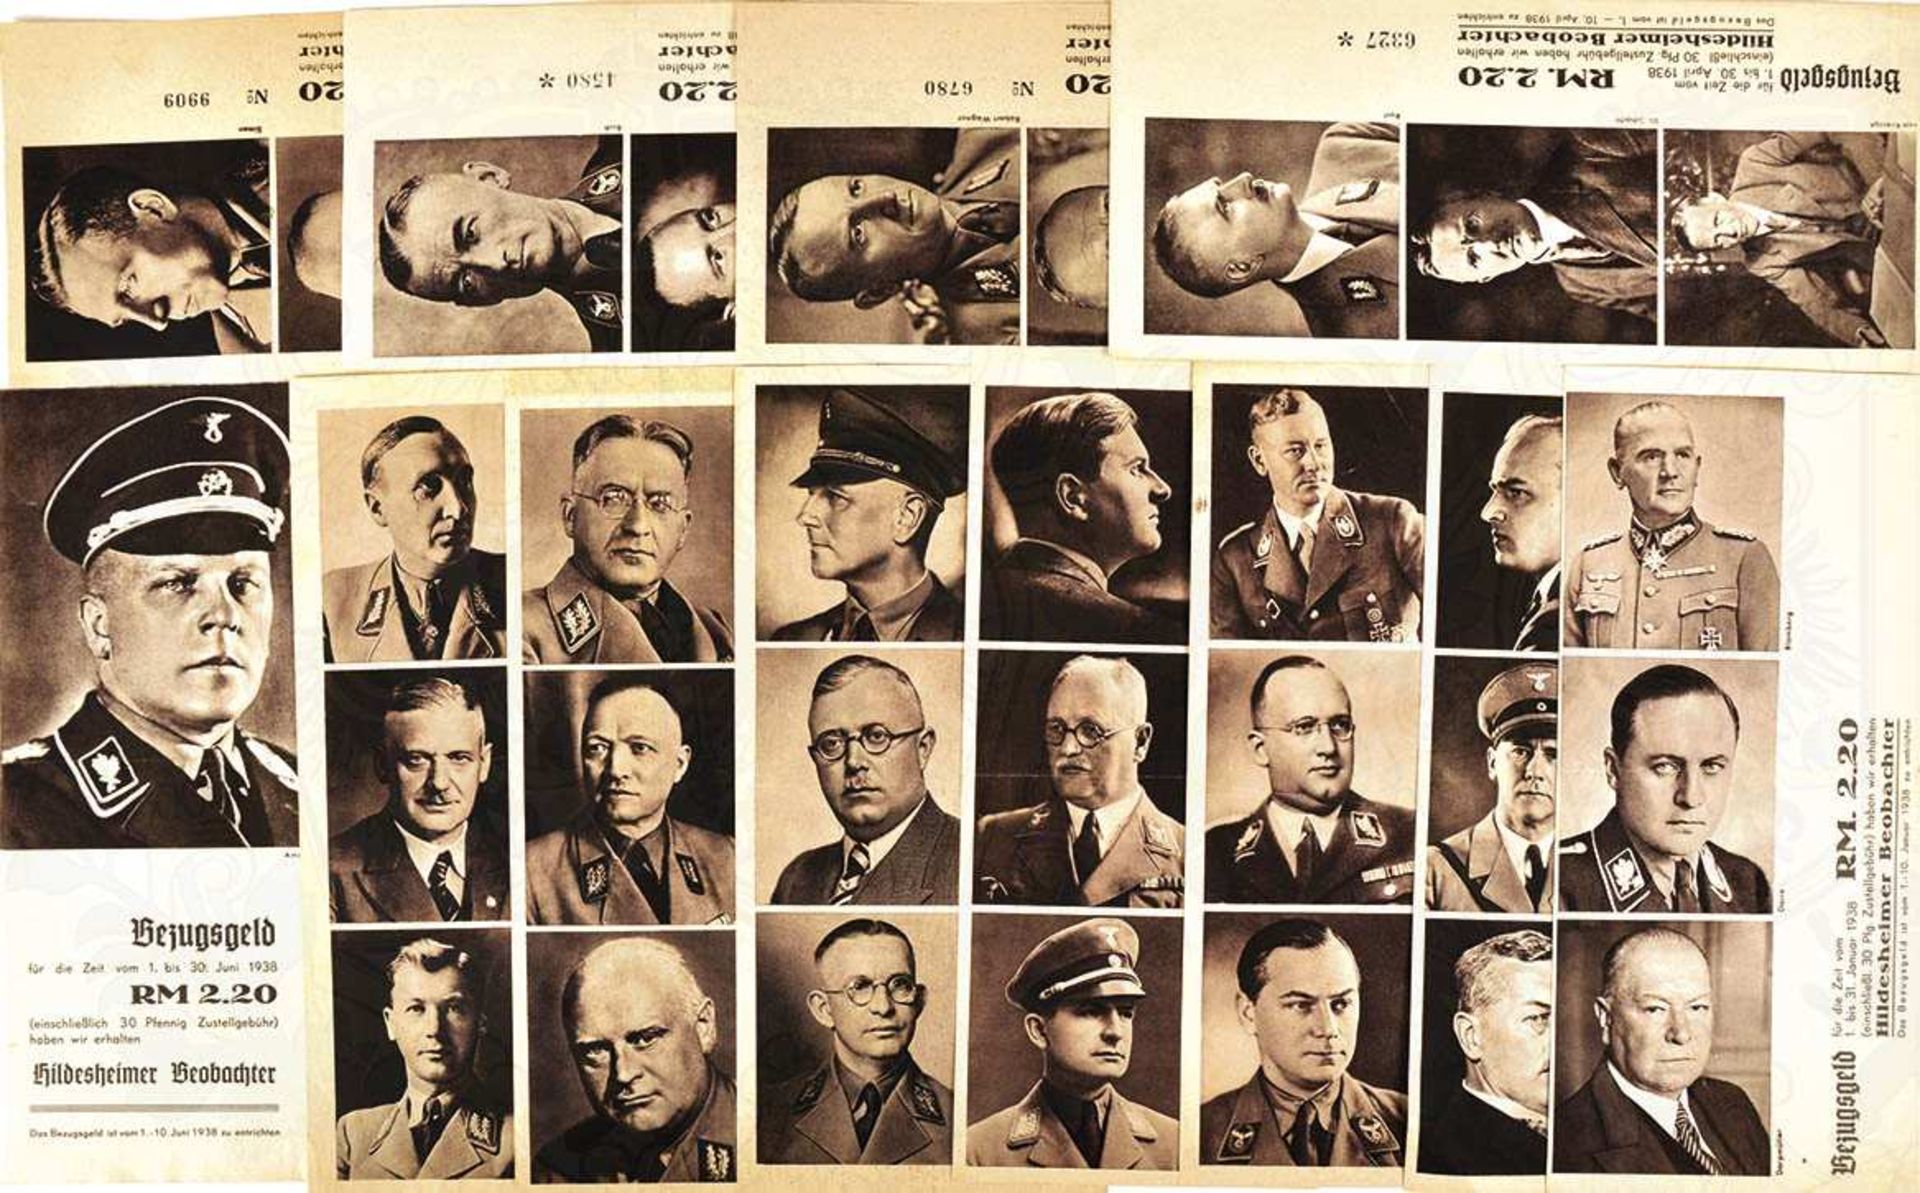 DAS FÜHRERKORPS DES 3. REICHES, Hildesheimer Beobachter 1937, 55 von 64 Einzelbildern, in 18 Blatt